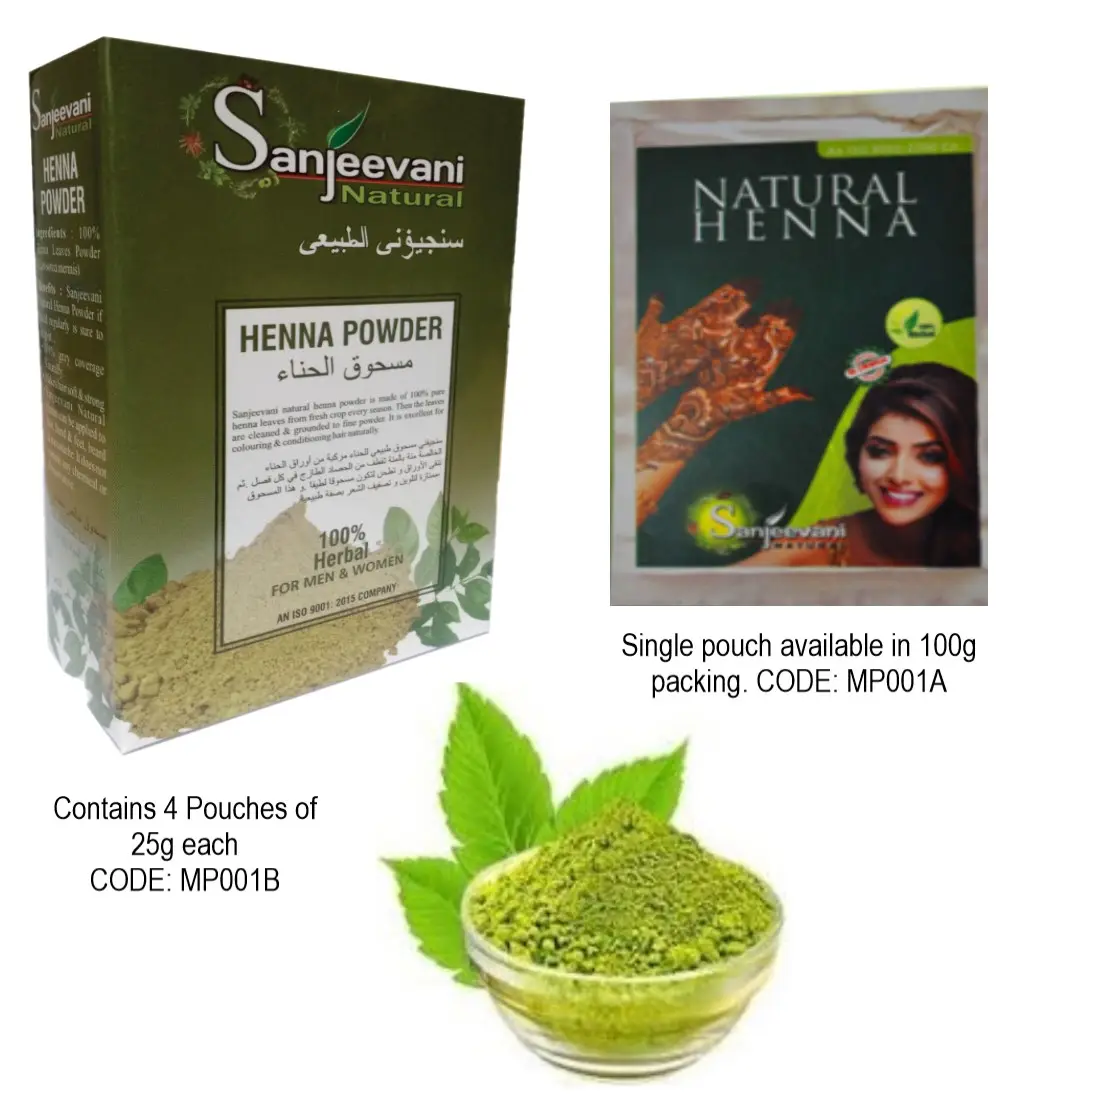 Tintura de cabelo natural de henna orgânica semi-permanente de longa duração para cabelos lisos fornecida por fornecedor indiano